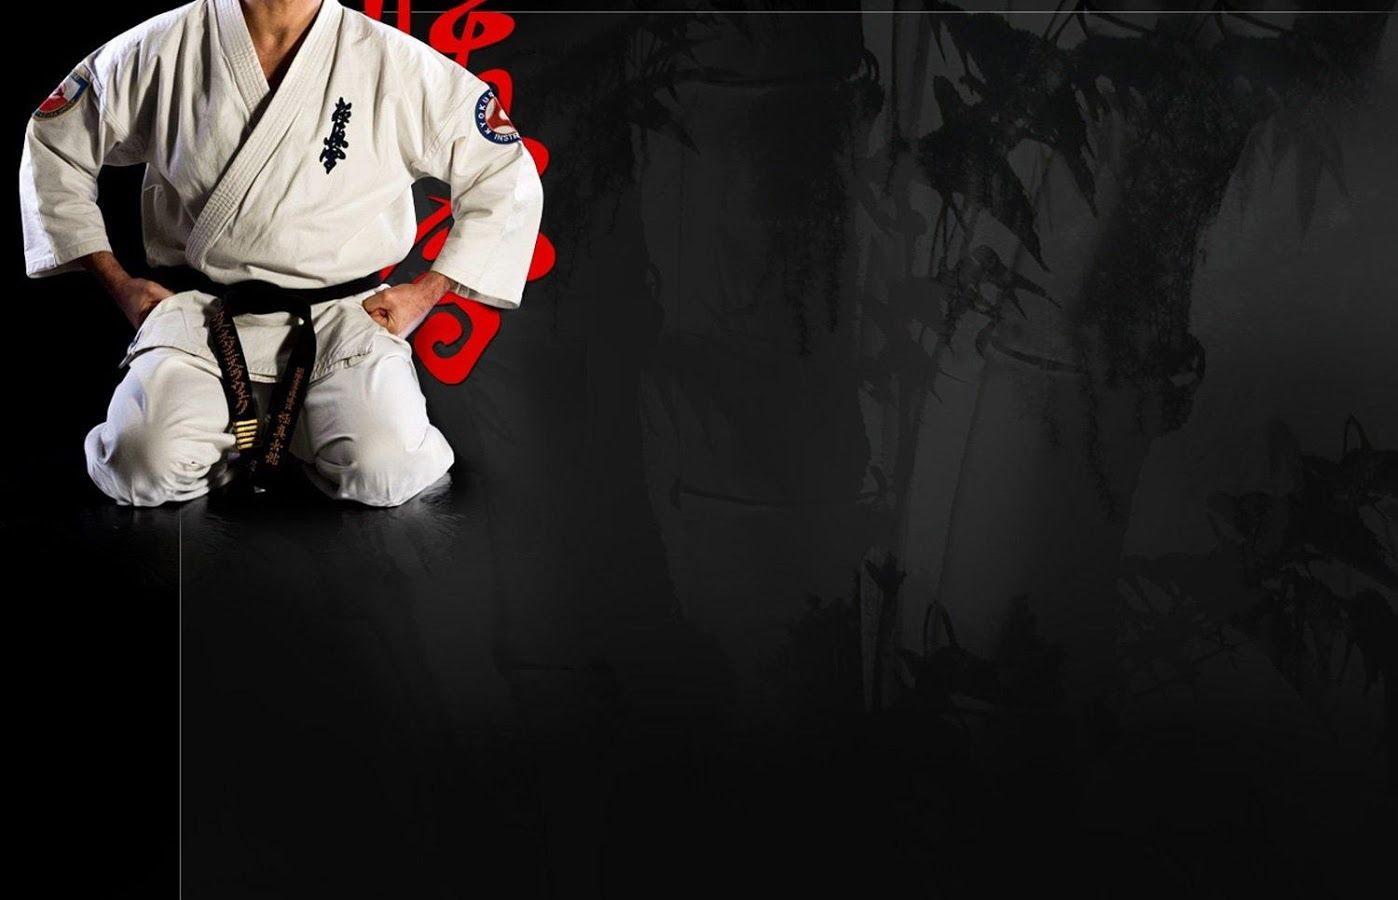 Karate Wallpapers - Top Những Hình Ảnh Đẹp